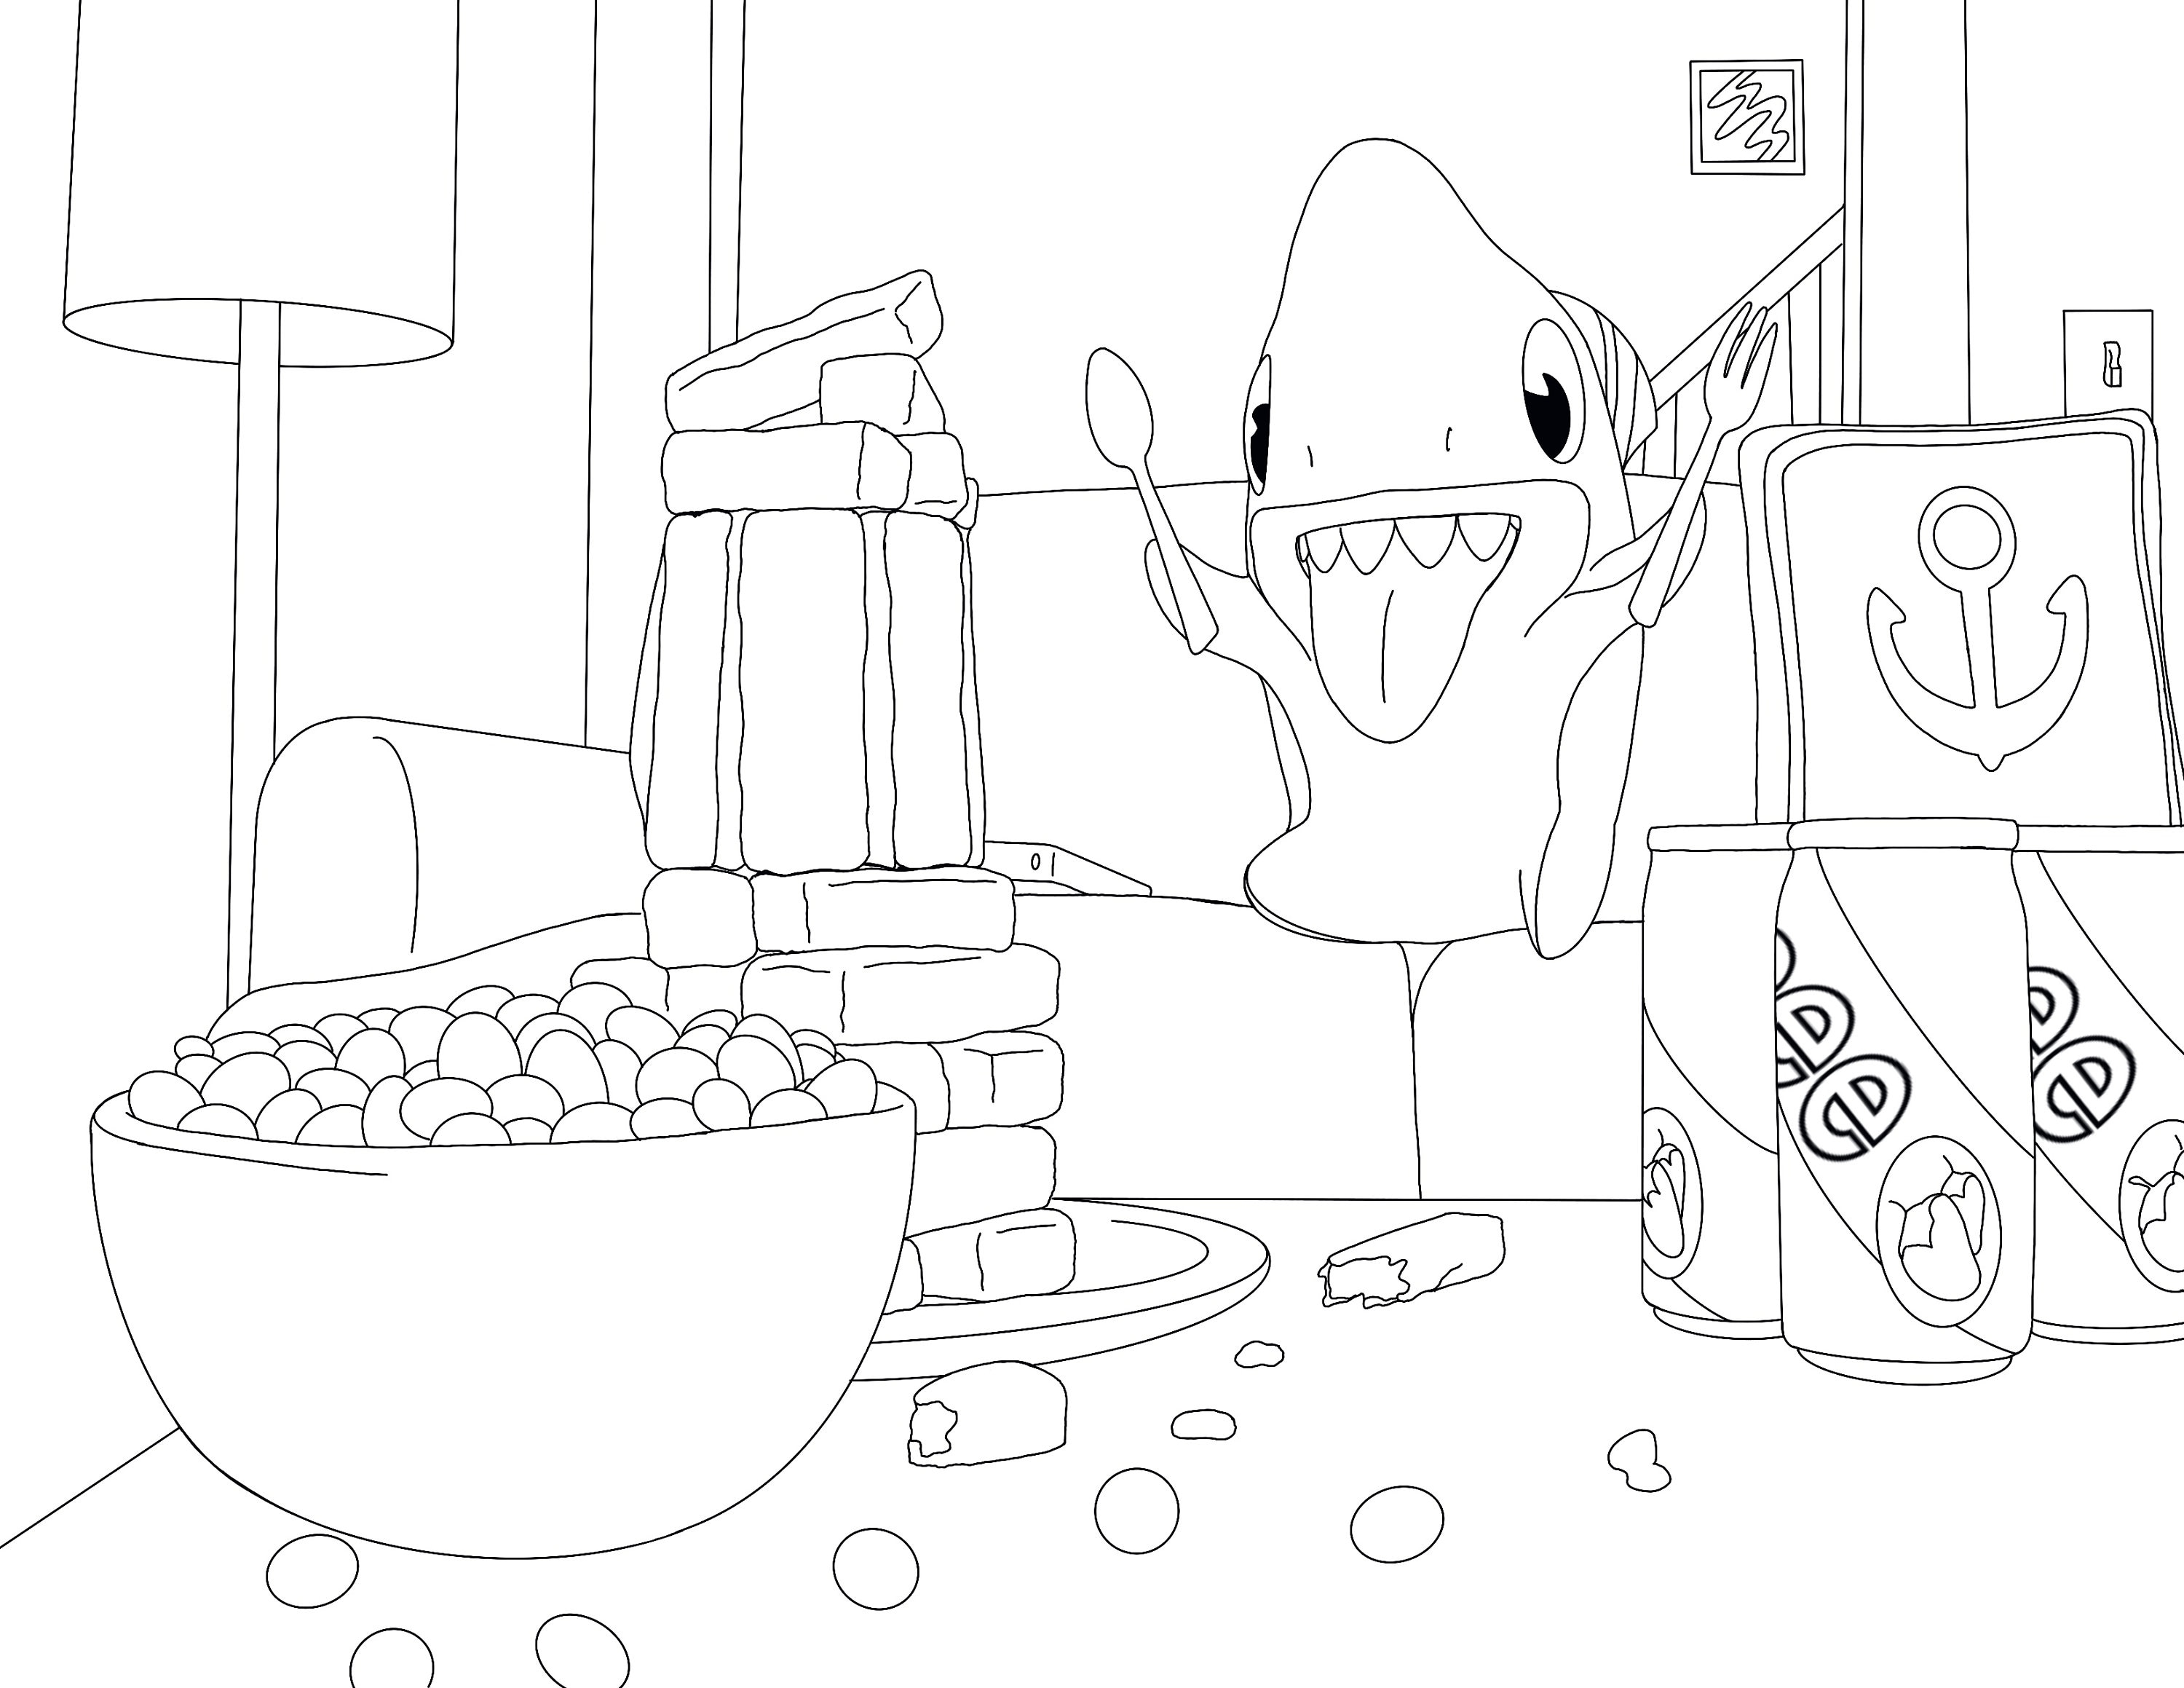 Sharkdog coloring page digital download